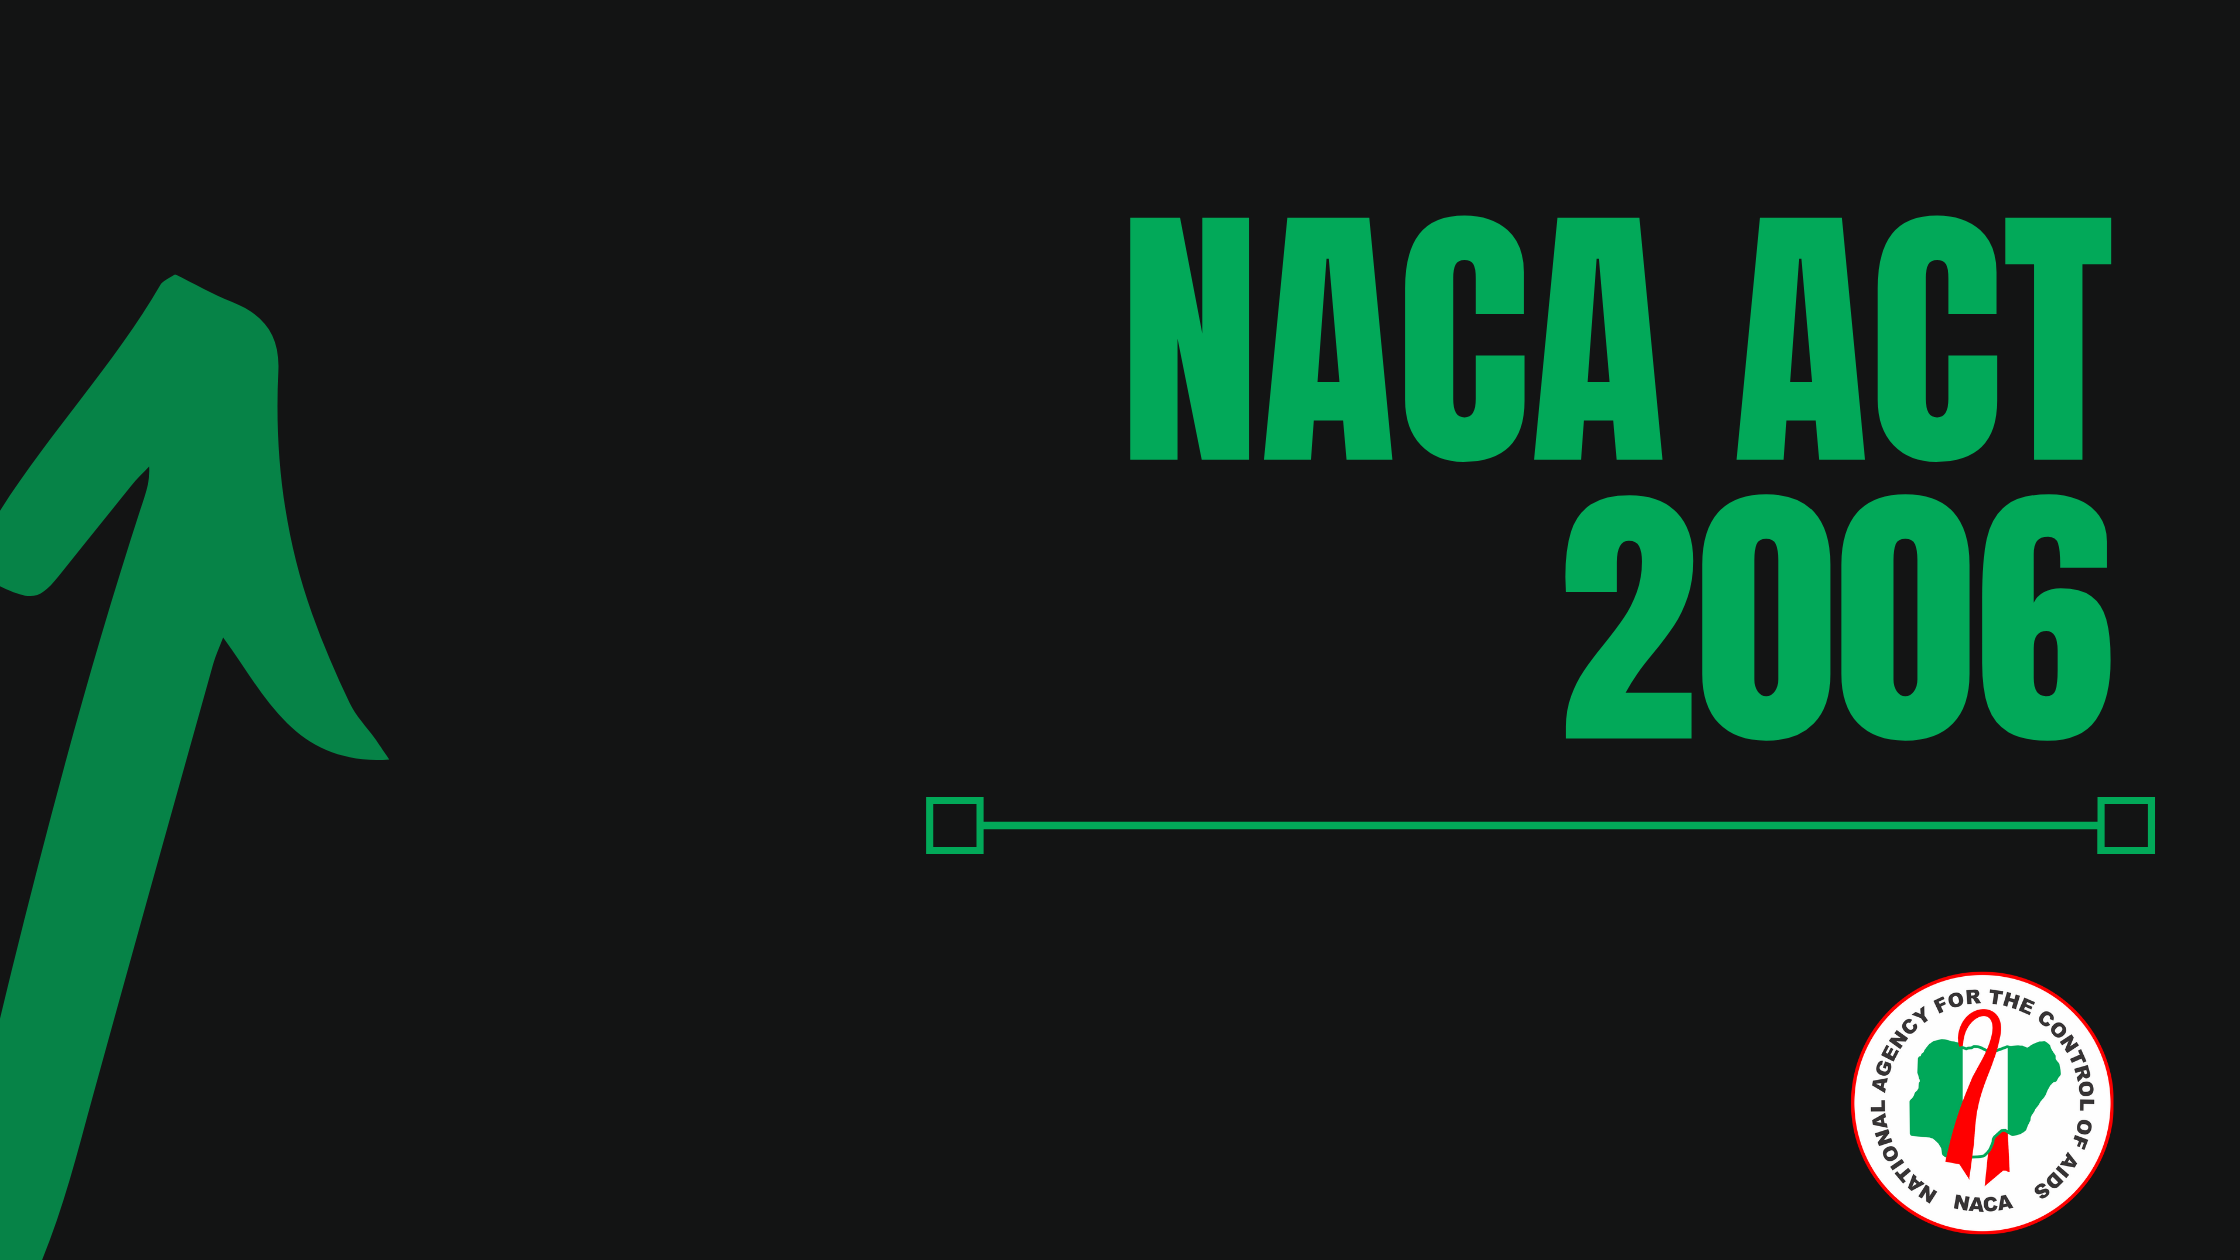 NACA ACT 2006